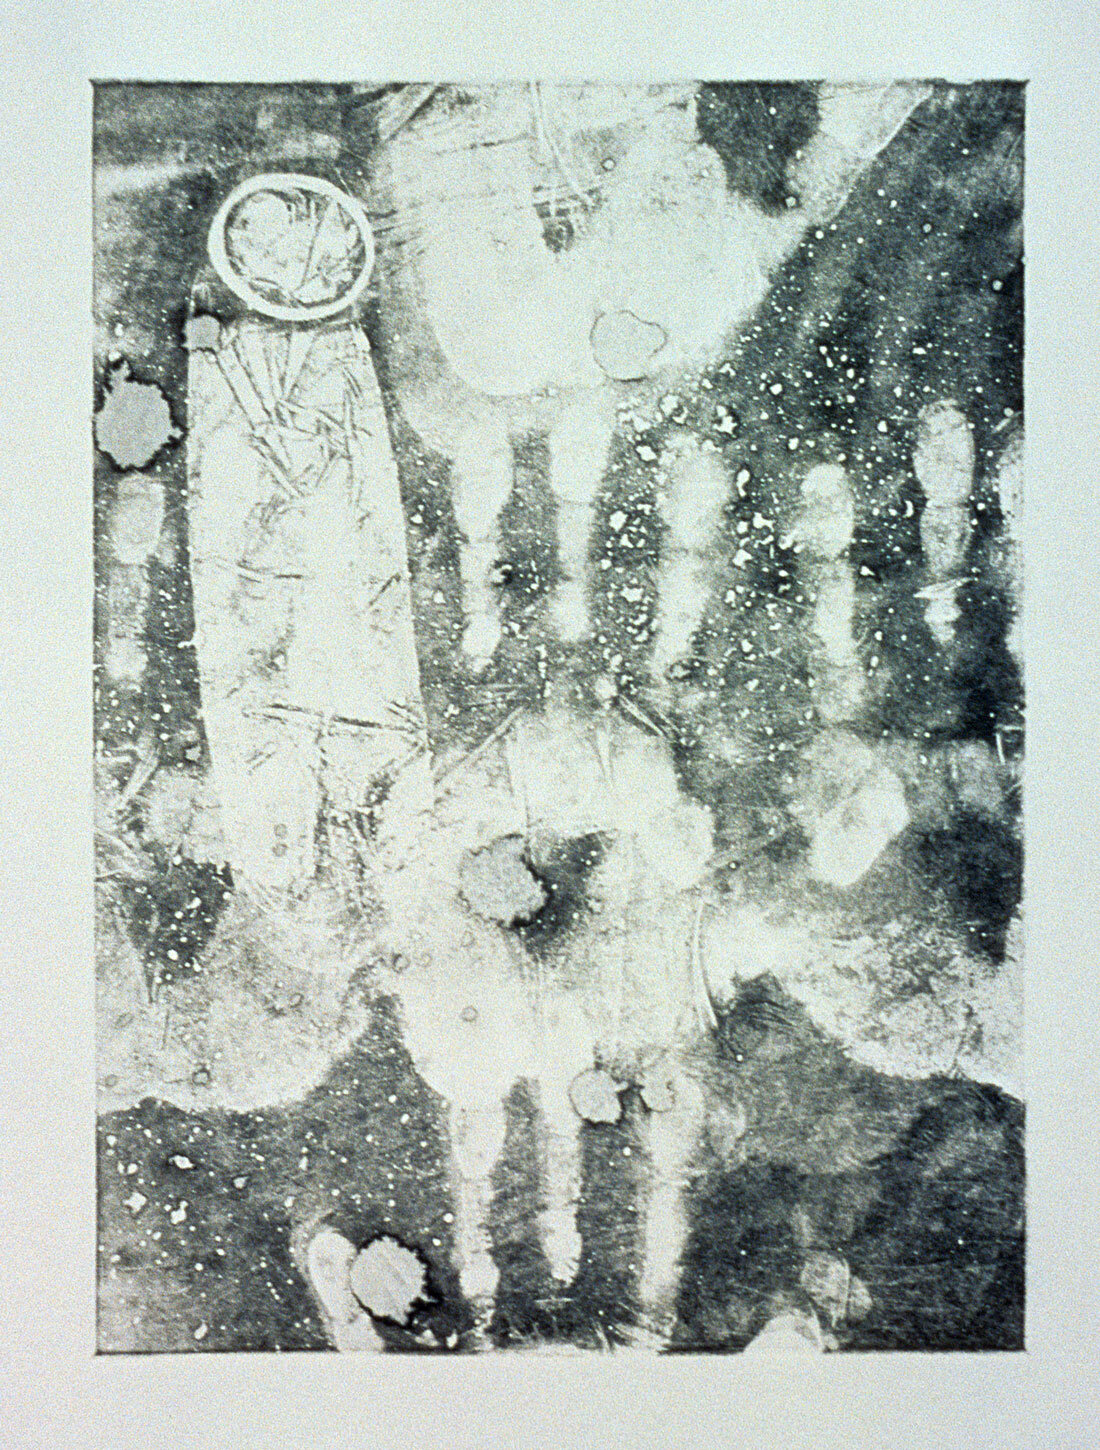   Stigmata , 1994, monotype, 15” x 11” 